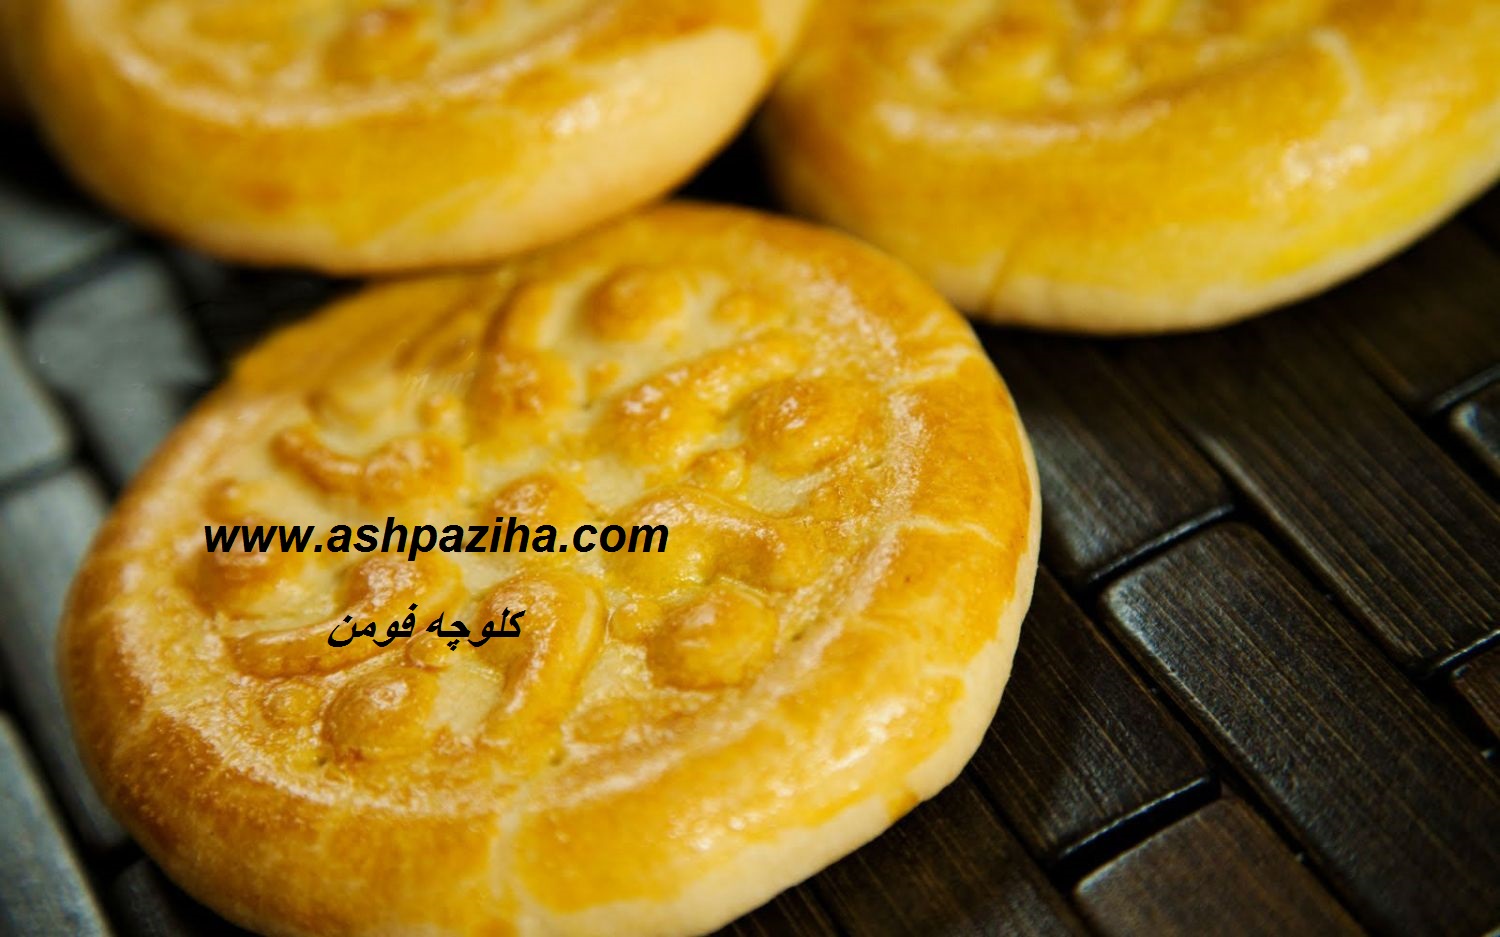 Recipes - Baking - Muffins - fouman - Teaching - image (1)